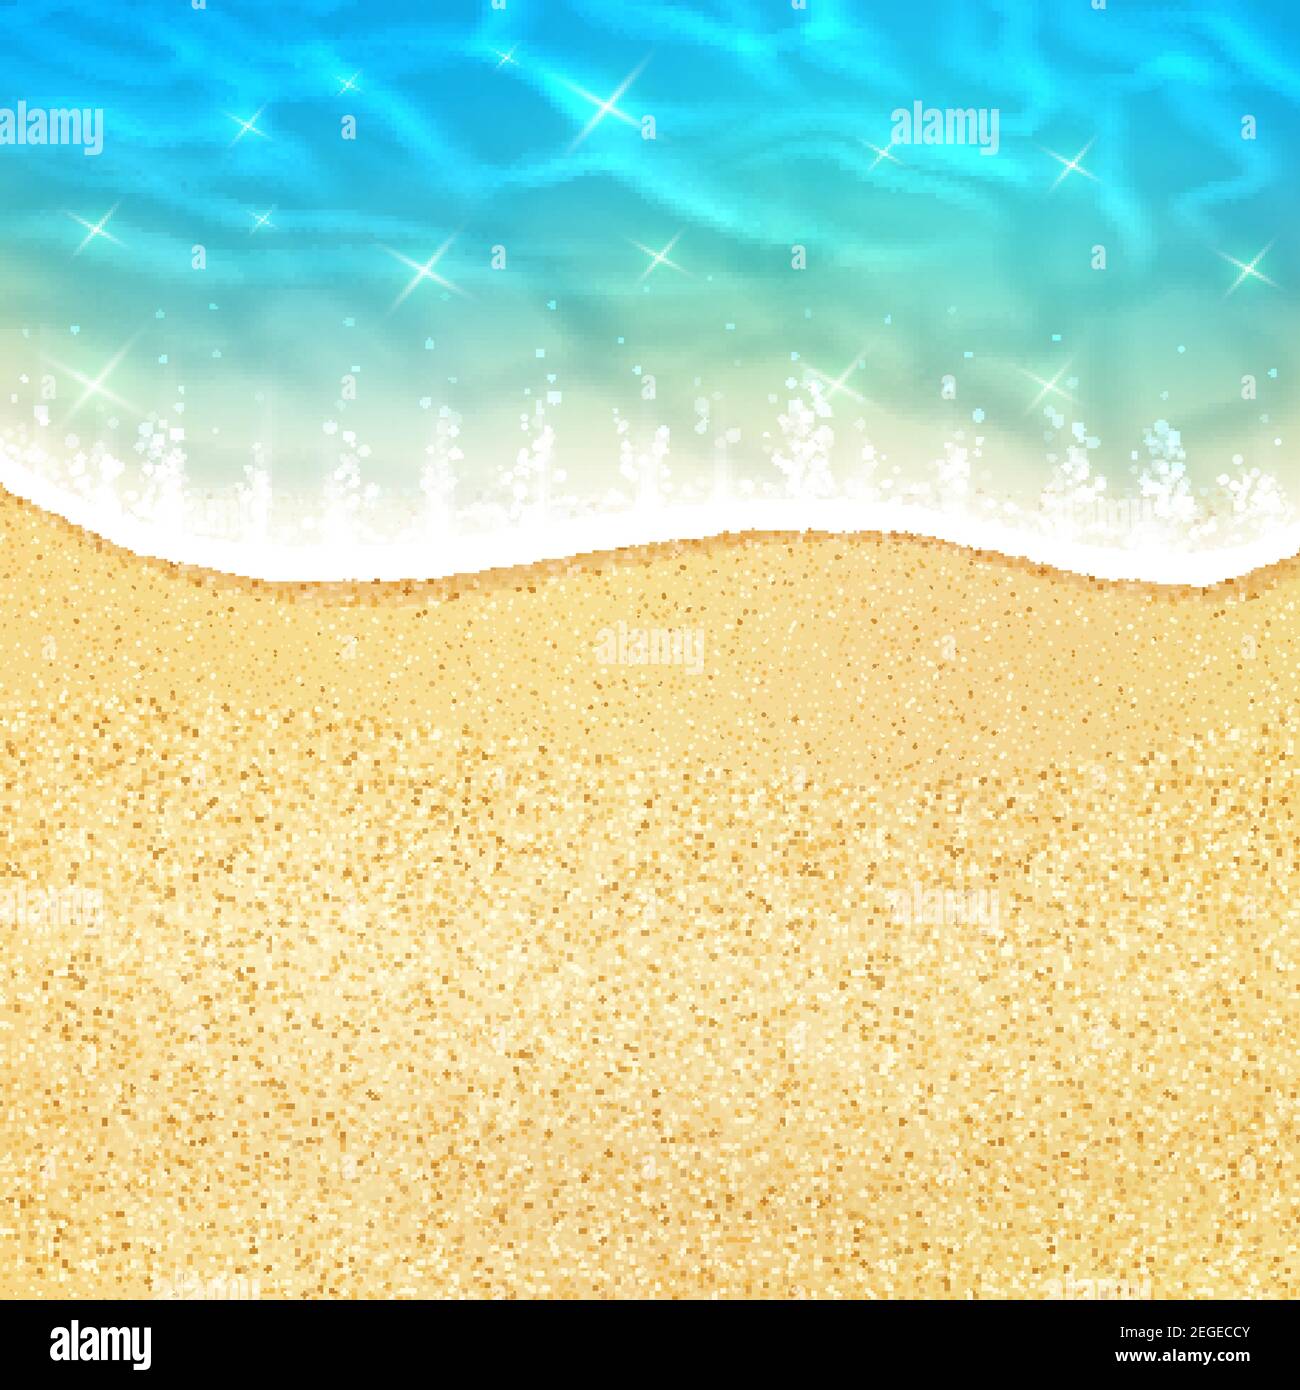 3,671 Beach Scene Sketch Images, Stock Photos & Vectors | Shutterstock